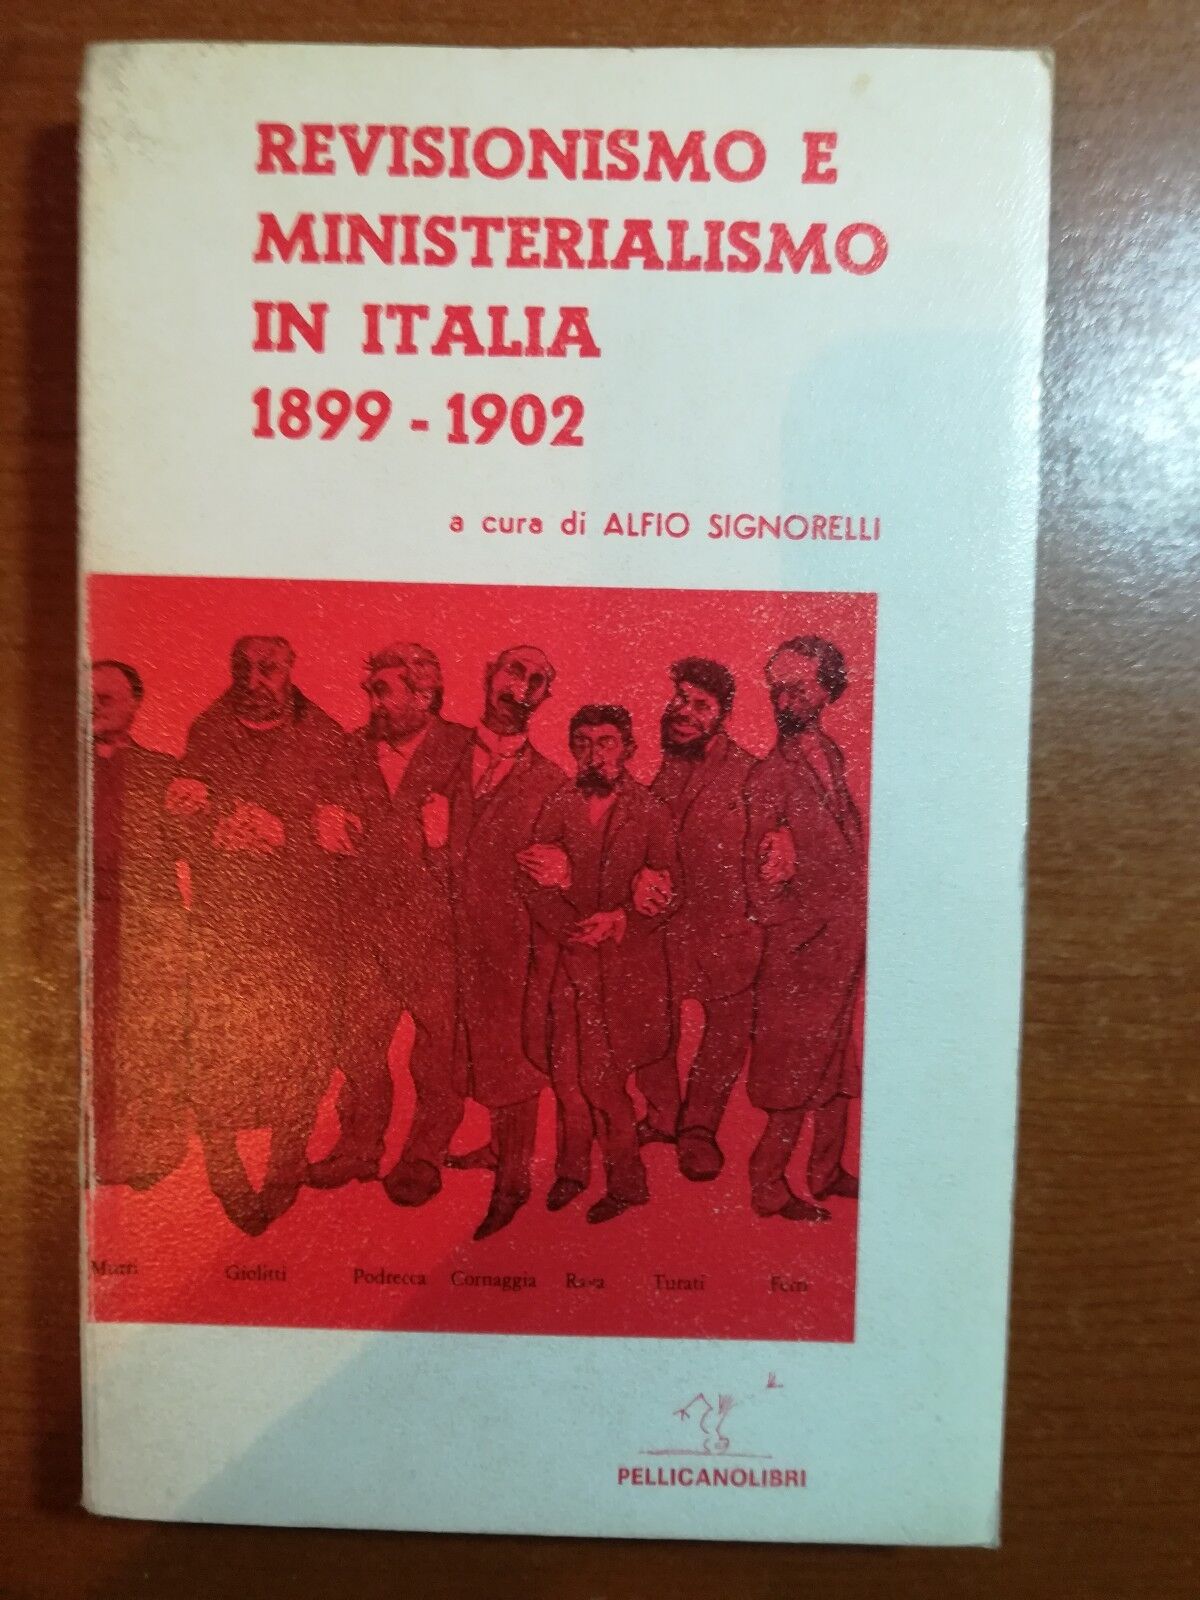 Revisionismo e ministerialismo in italia - Alfio Signorelli - Pellicanolibri - 1